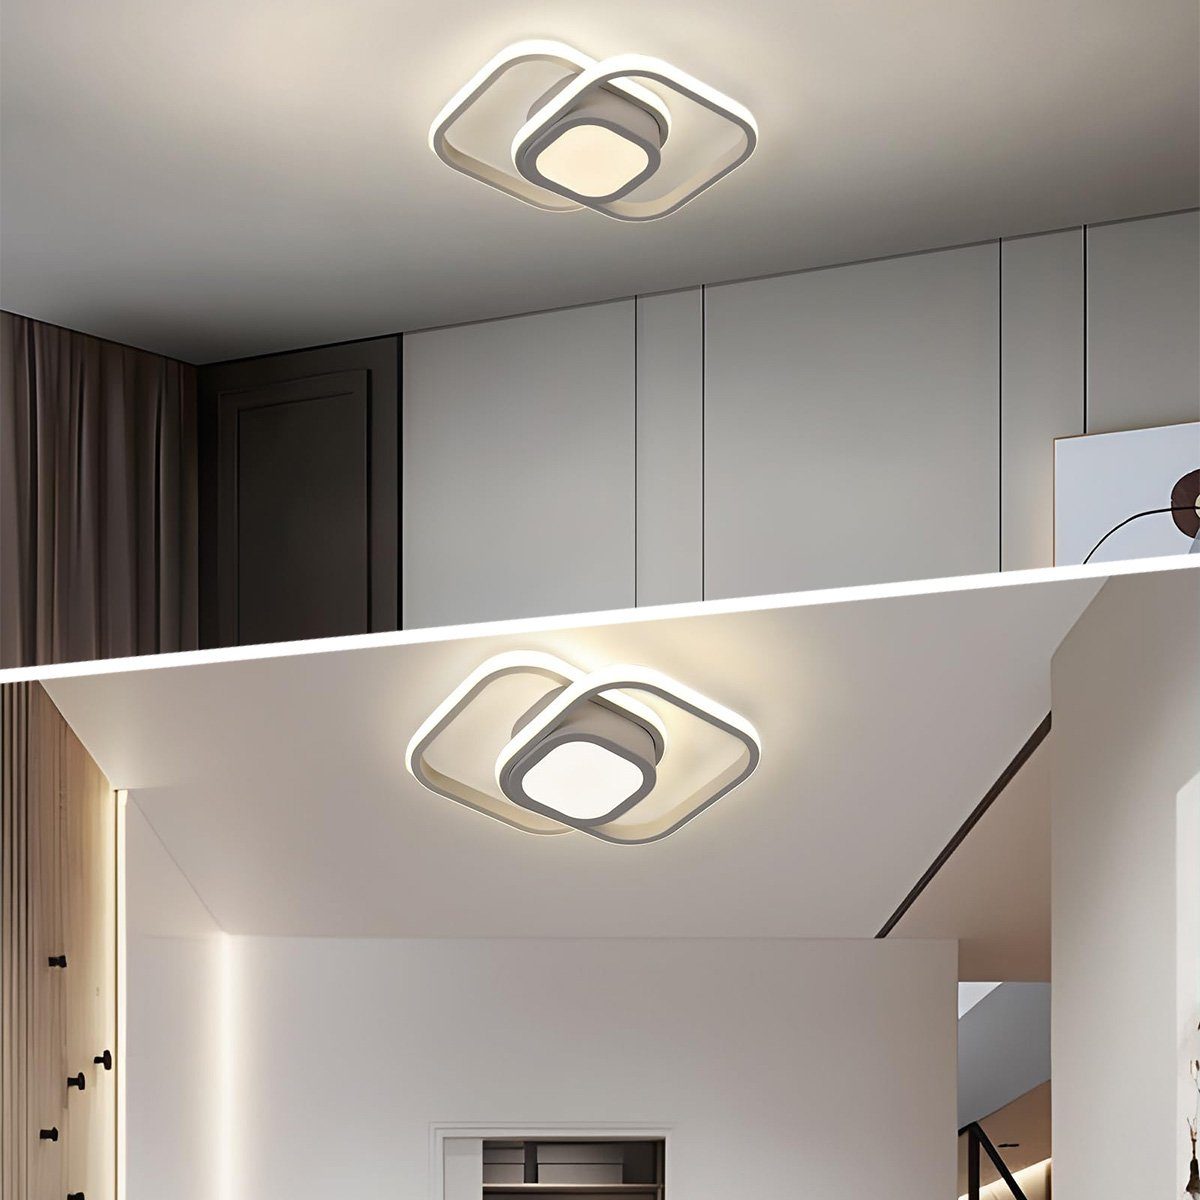 Farben 36W,Drei dimmbar DOPWii Deckenlampe für Wohnzimmer Deckenleuchten Deckenleuchte,LED